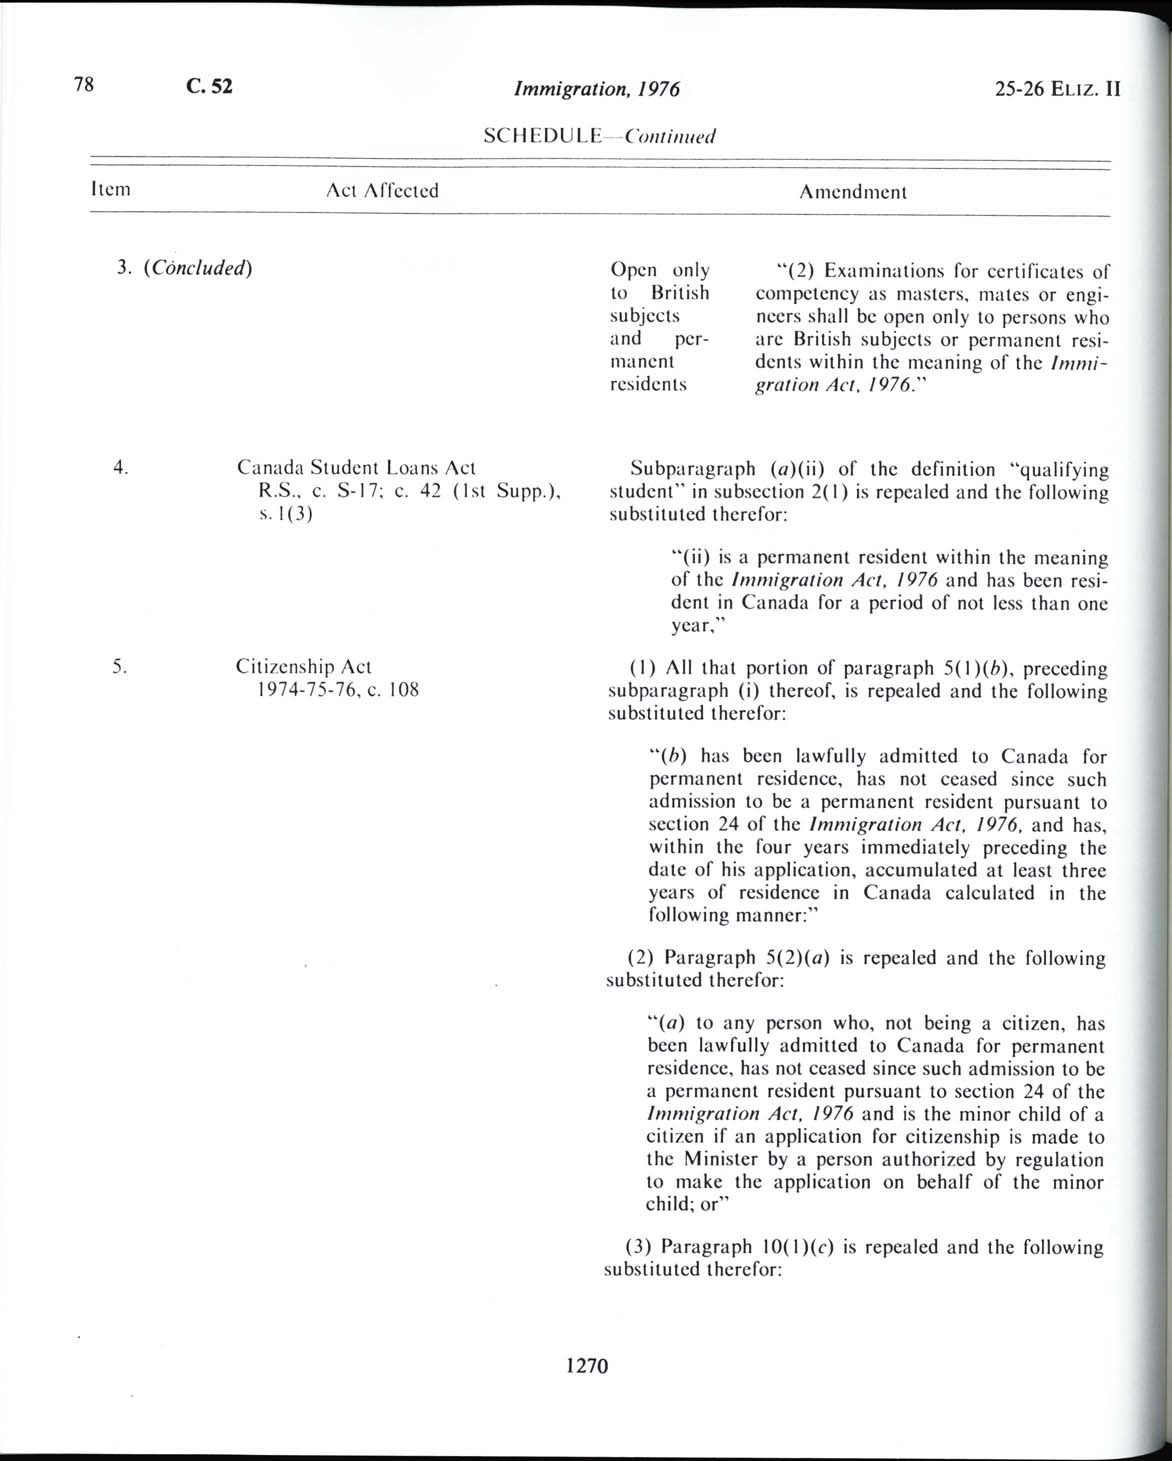 Page 1270 Loi sur l’immigration de 1976